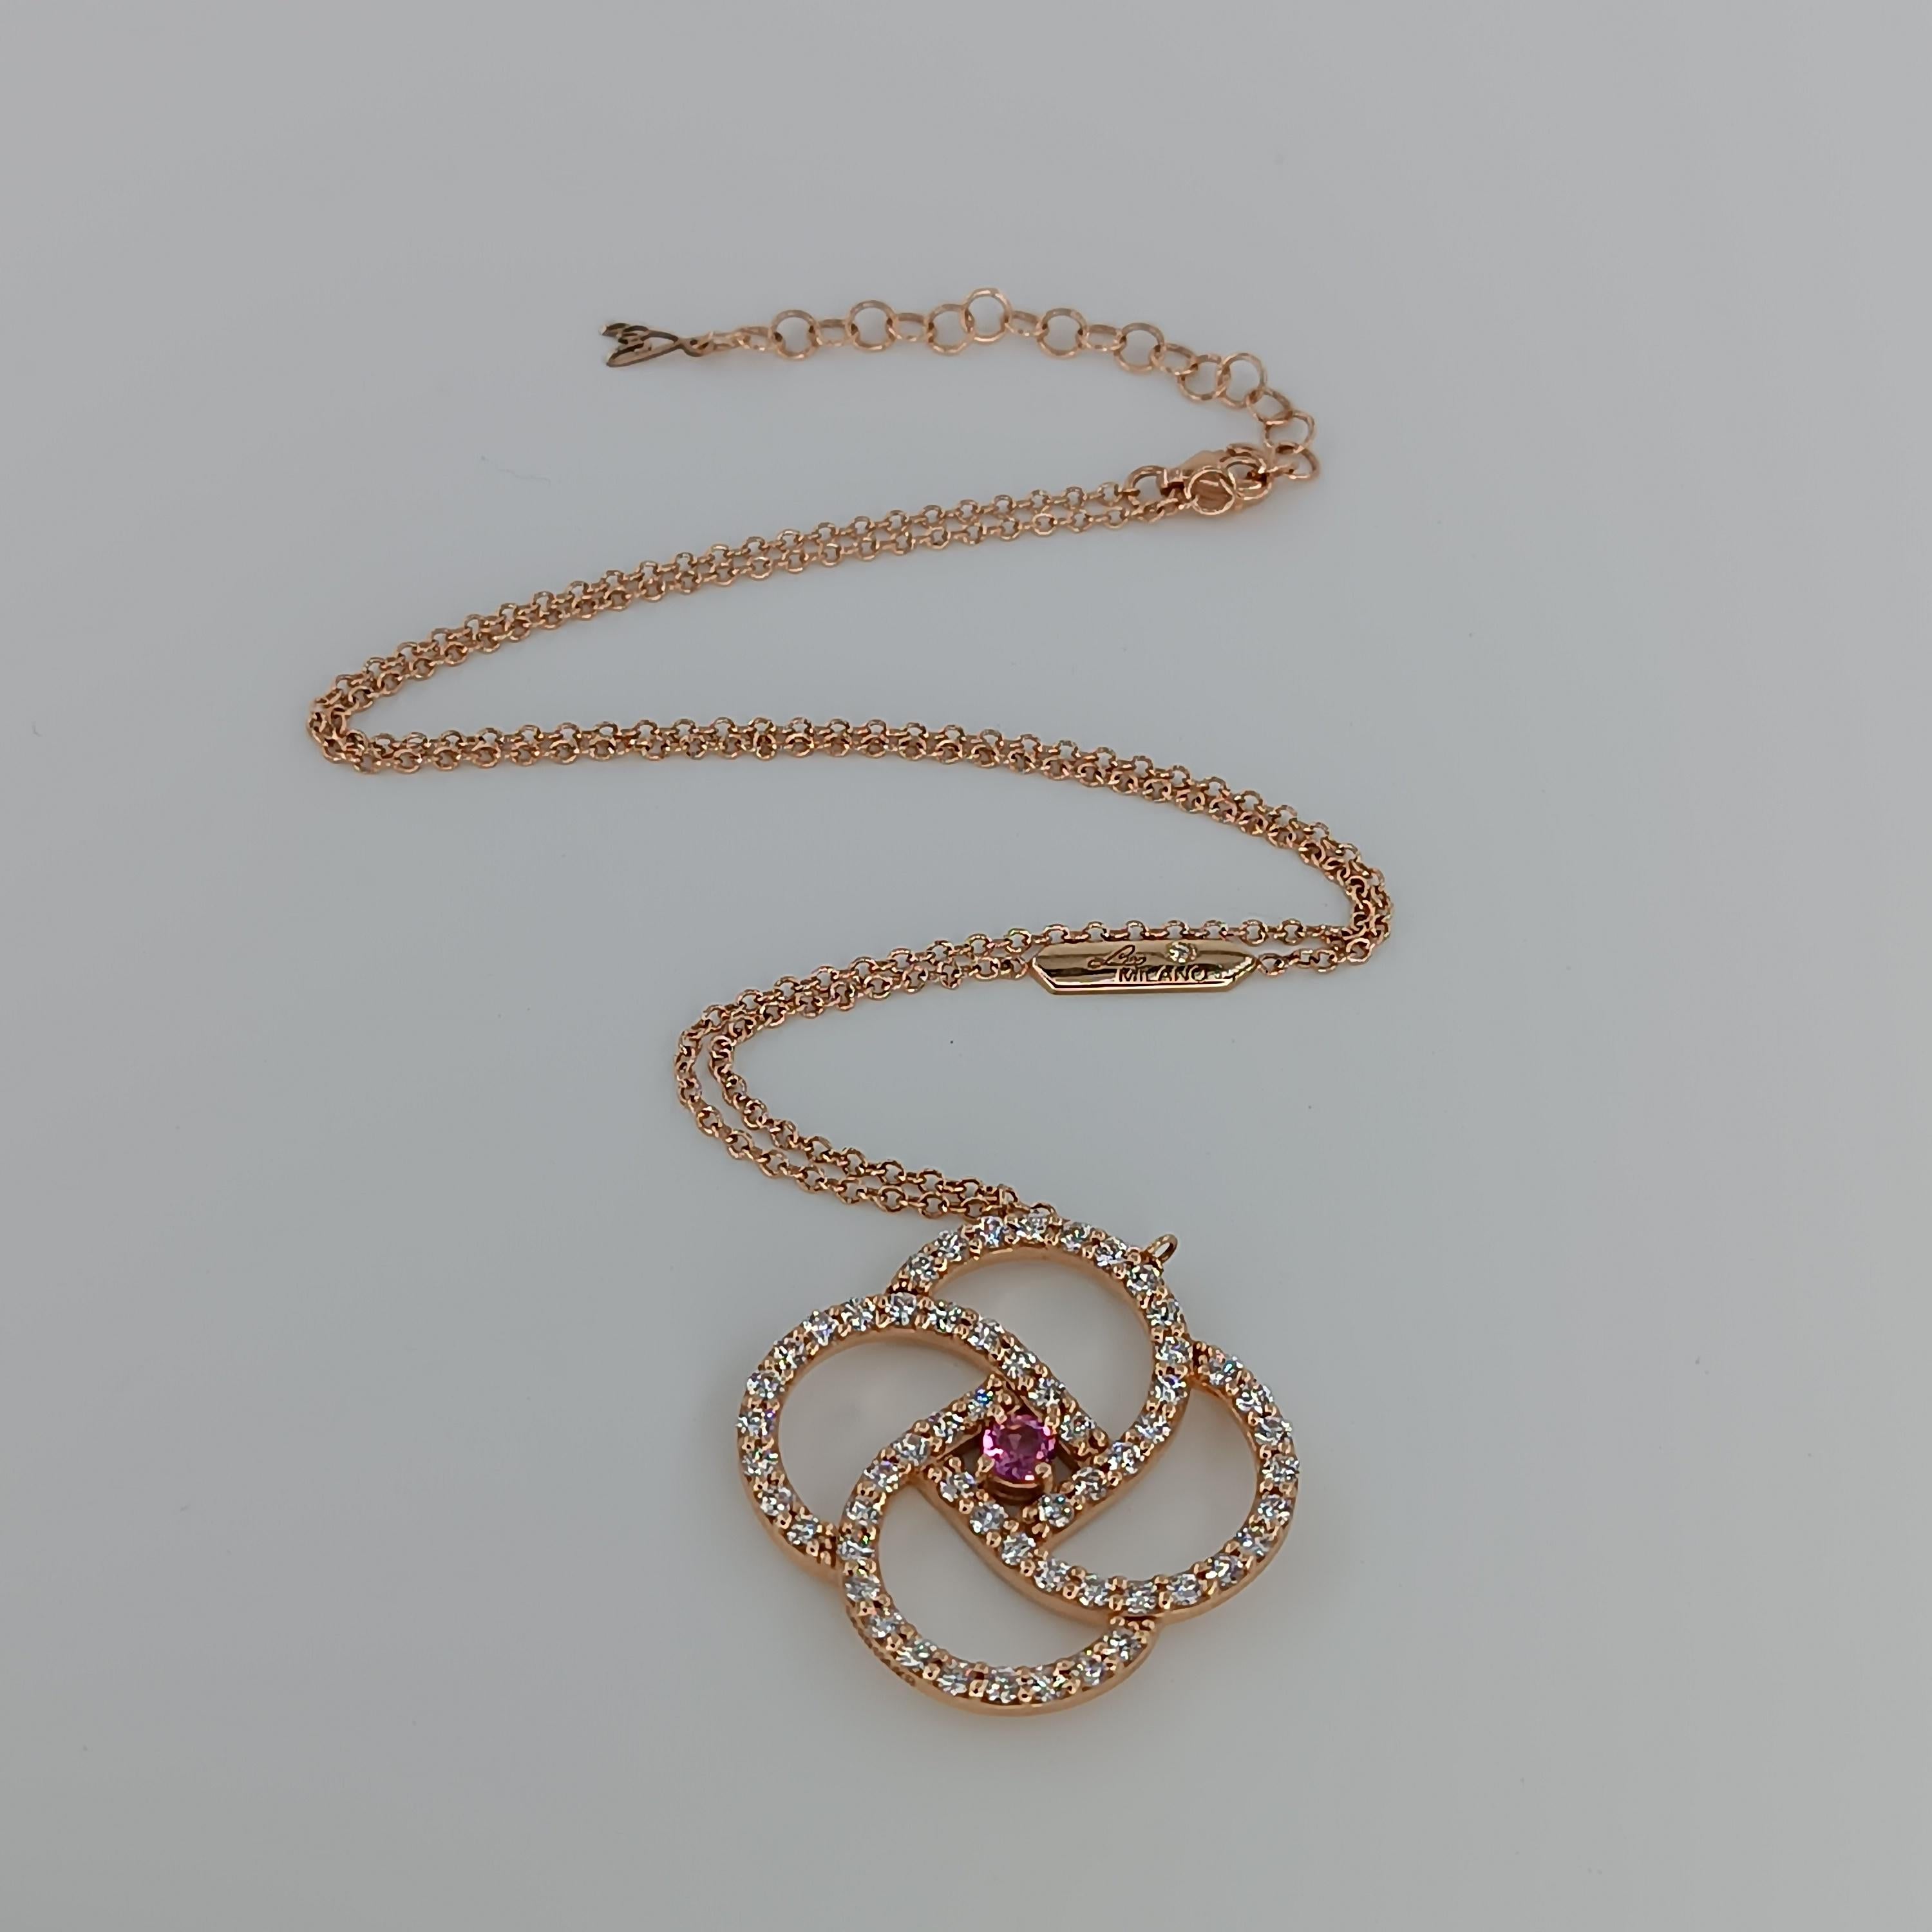 Brilliant Cut 0.25 Carat Pink Sapphire VS G Color Diamonds 1.68 Carats.Rose Gold Necklace For Sale